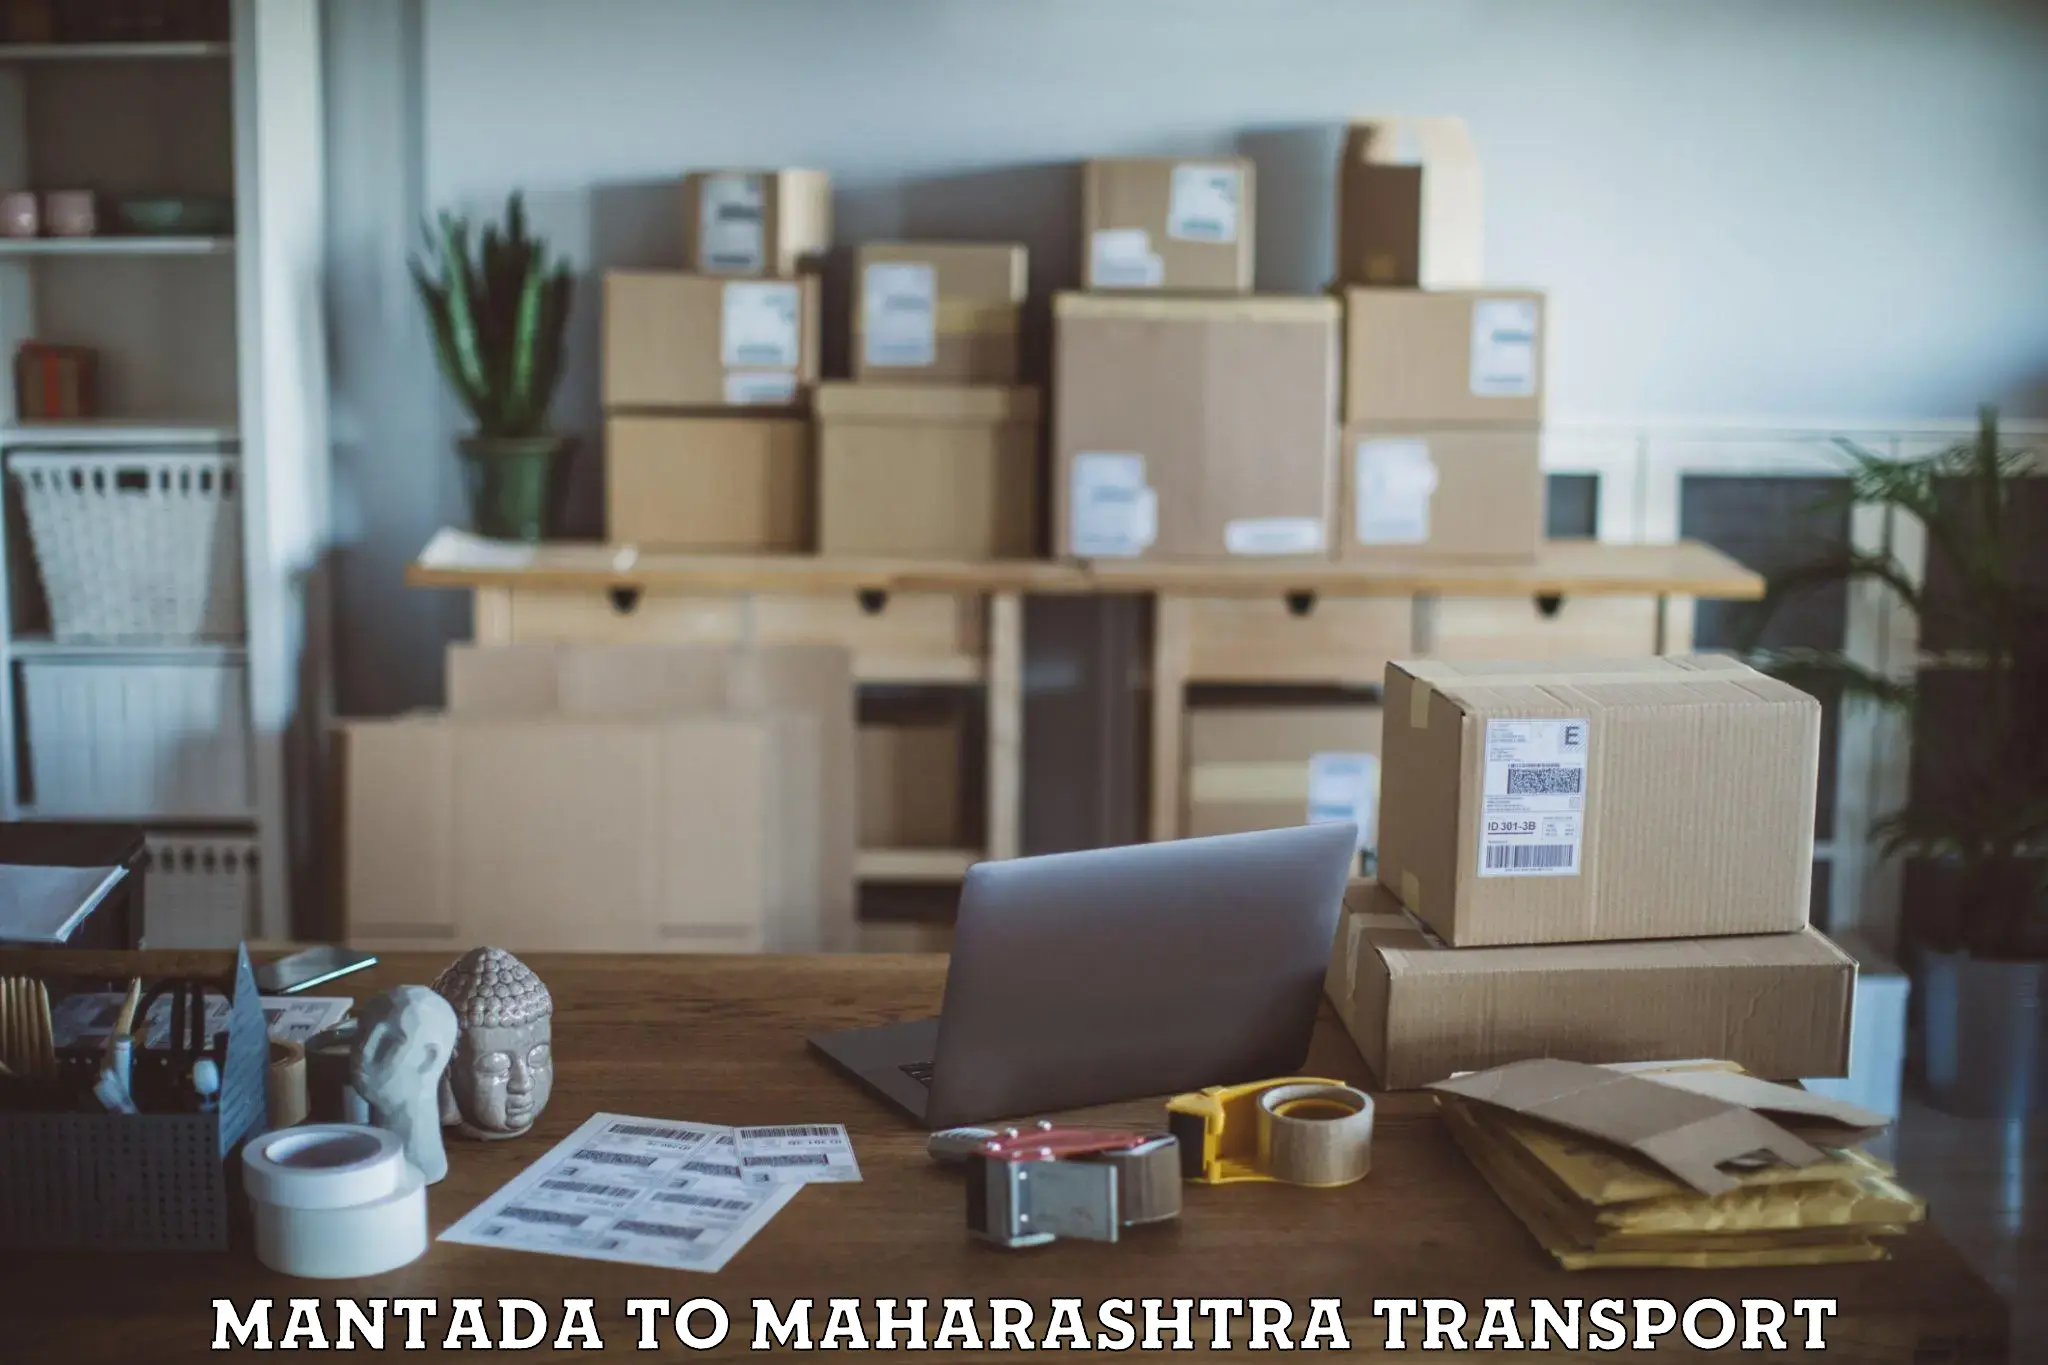 Goods delivery service Mantada to Maharashtra